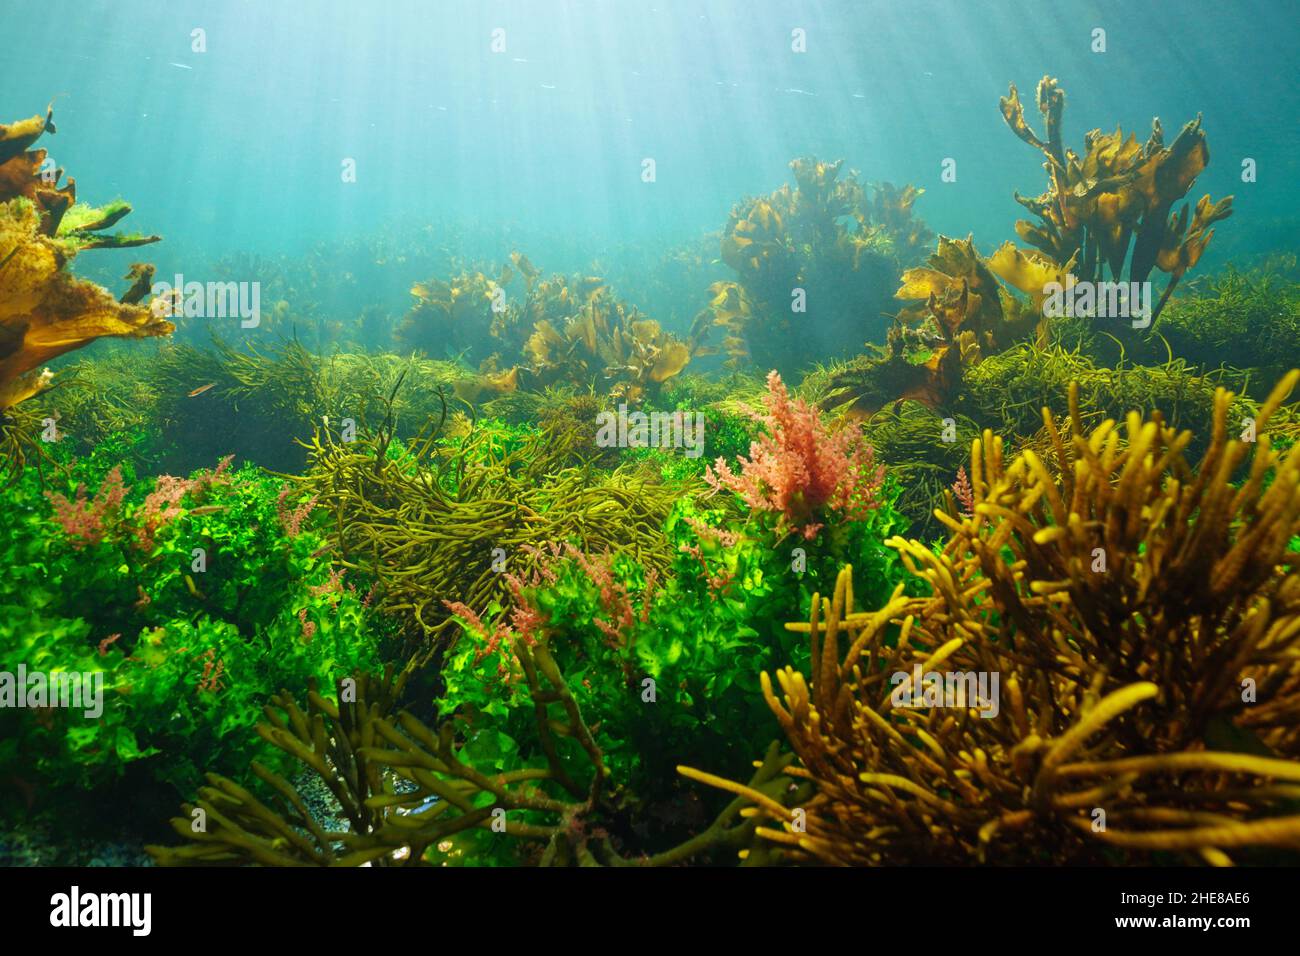 Paisaje marino subacuático, algas verdes, marrones y rojas en el océano con luz natural, Atlántico oriental, España, Galicia Foto de stock